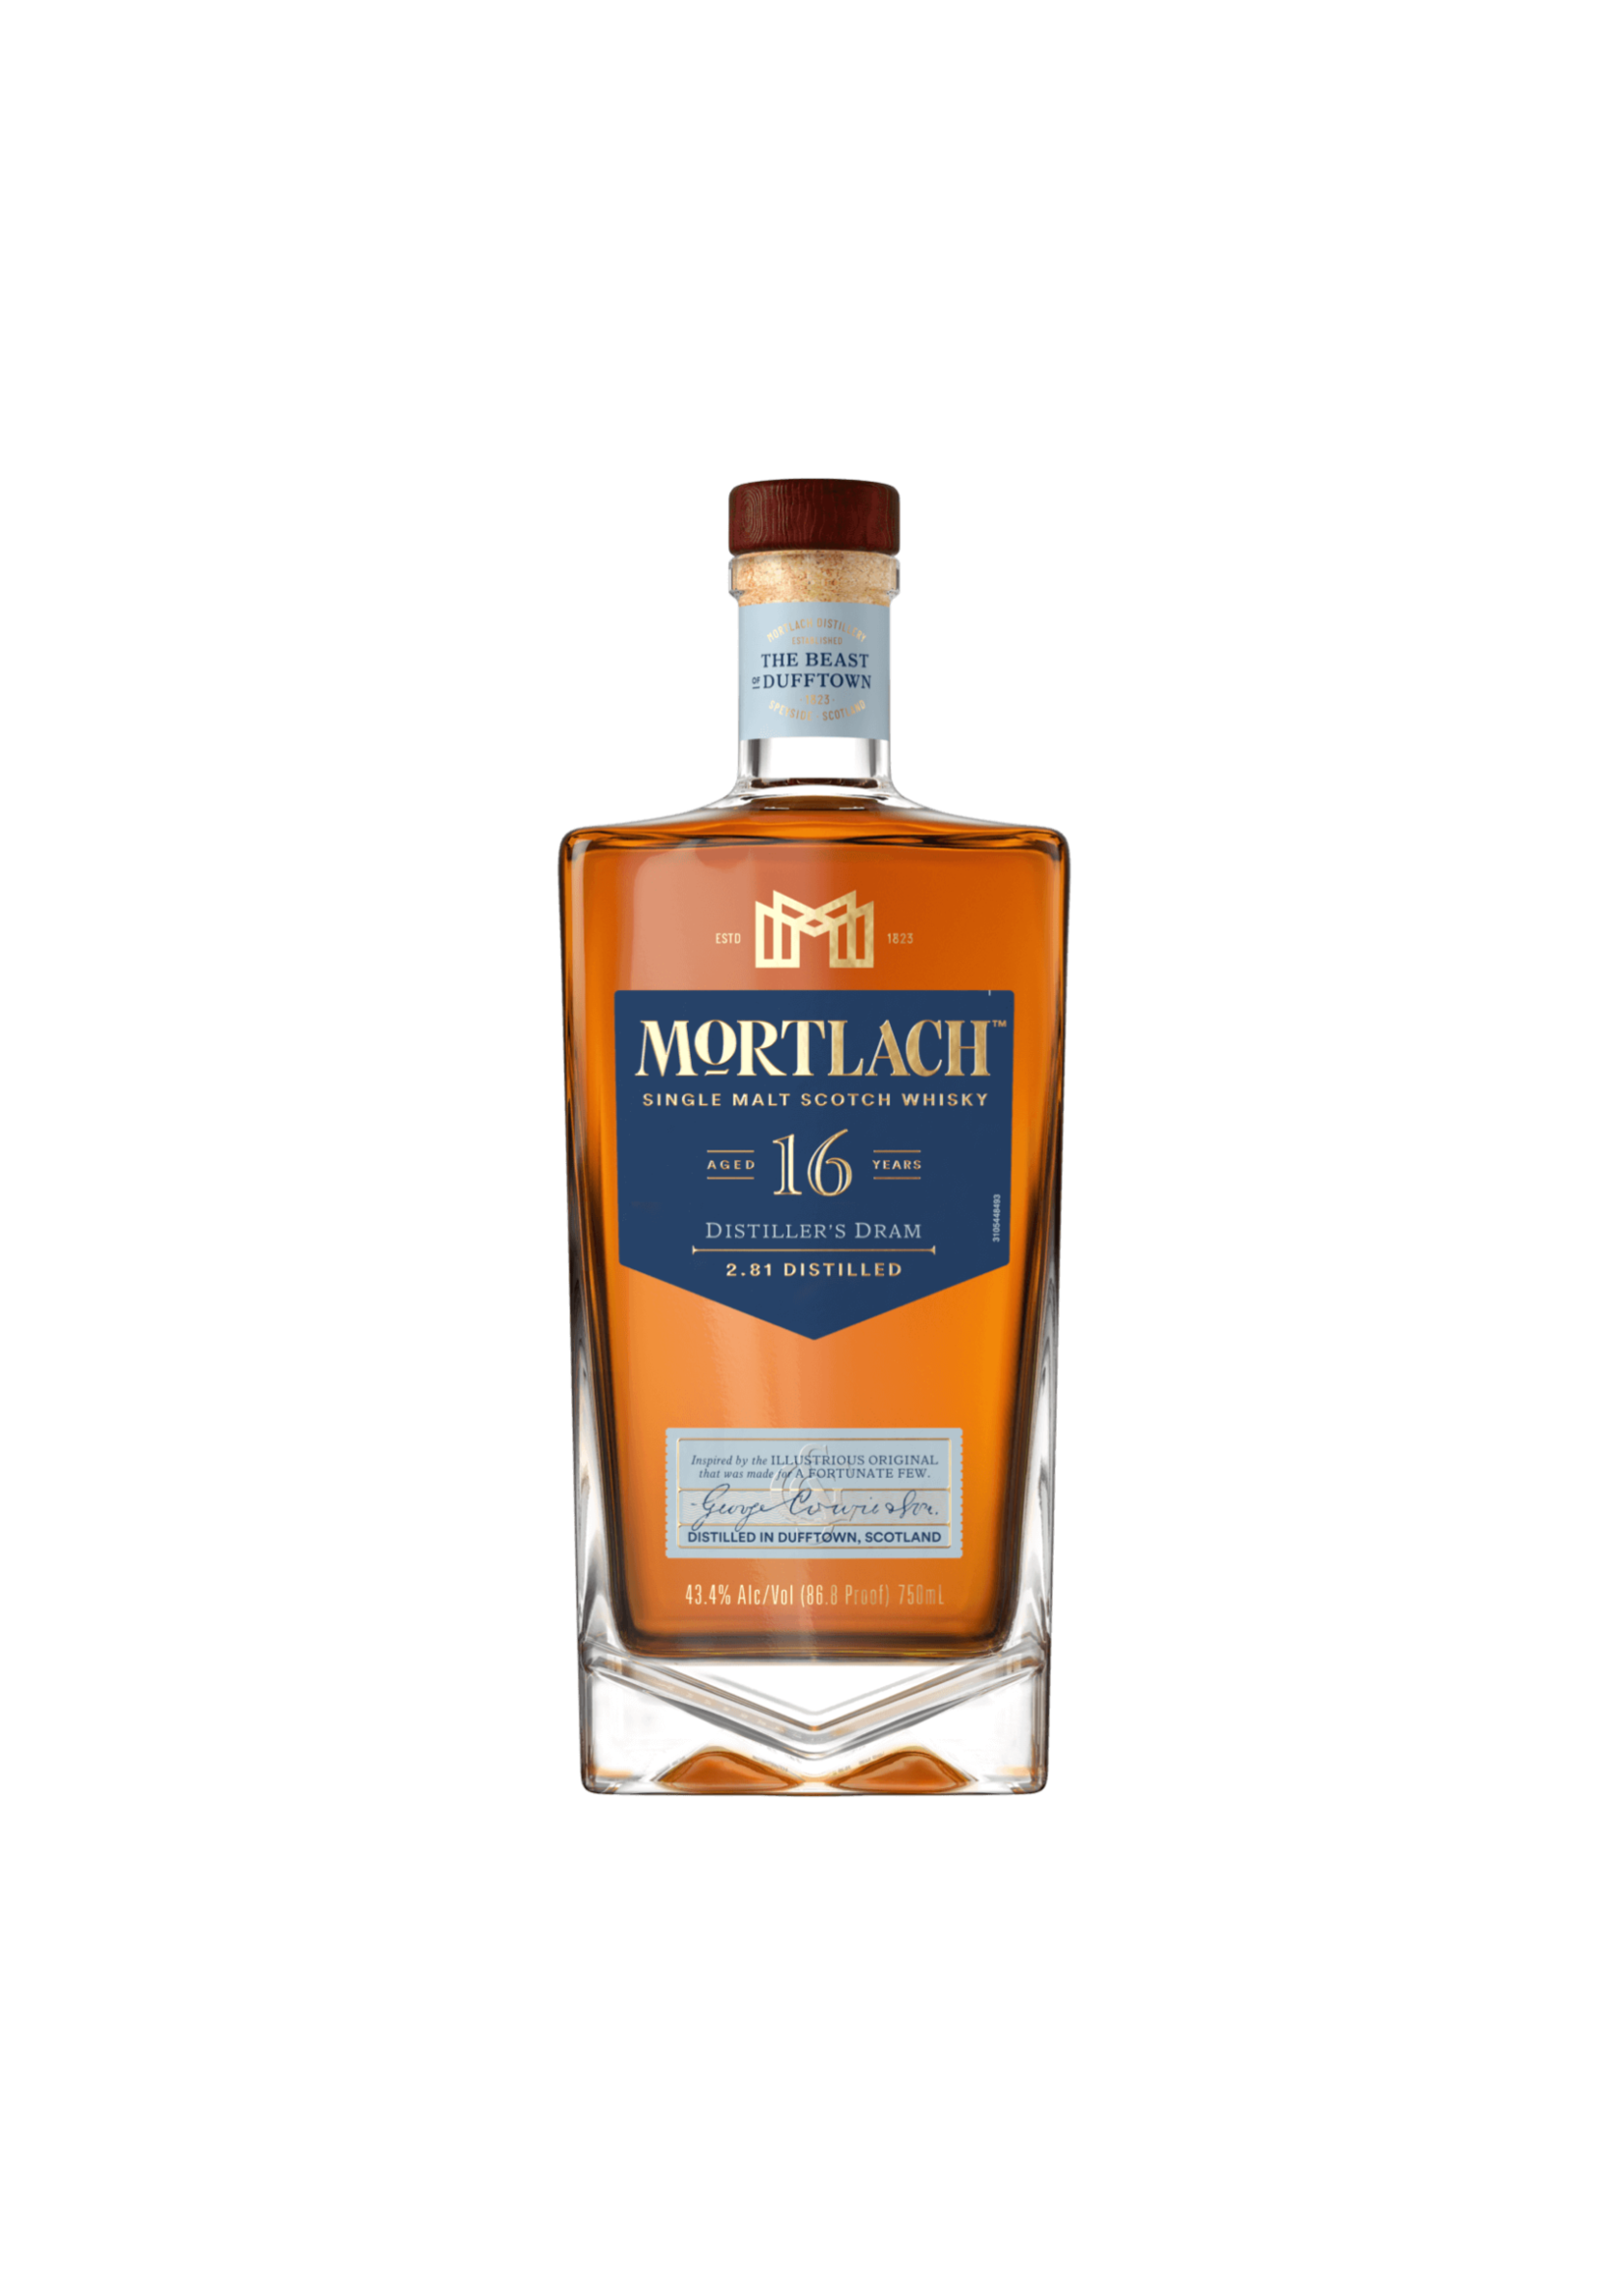 Mortlach Mortlach / 16 Year Single Malt Scotch Whisky 43.4% abv / 750mL